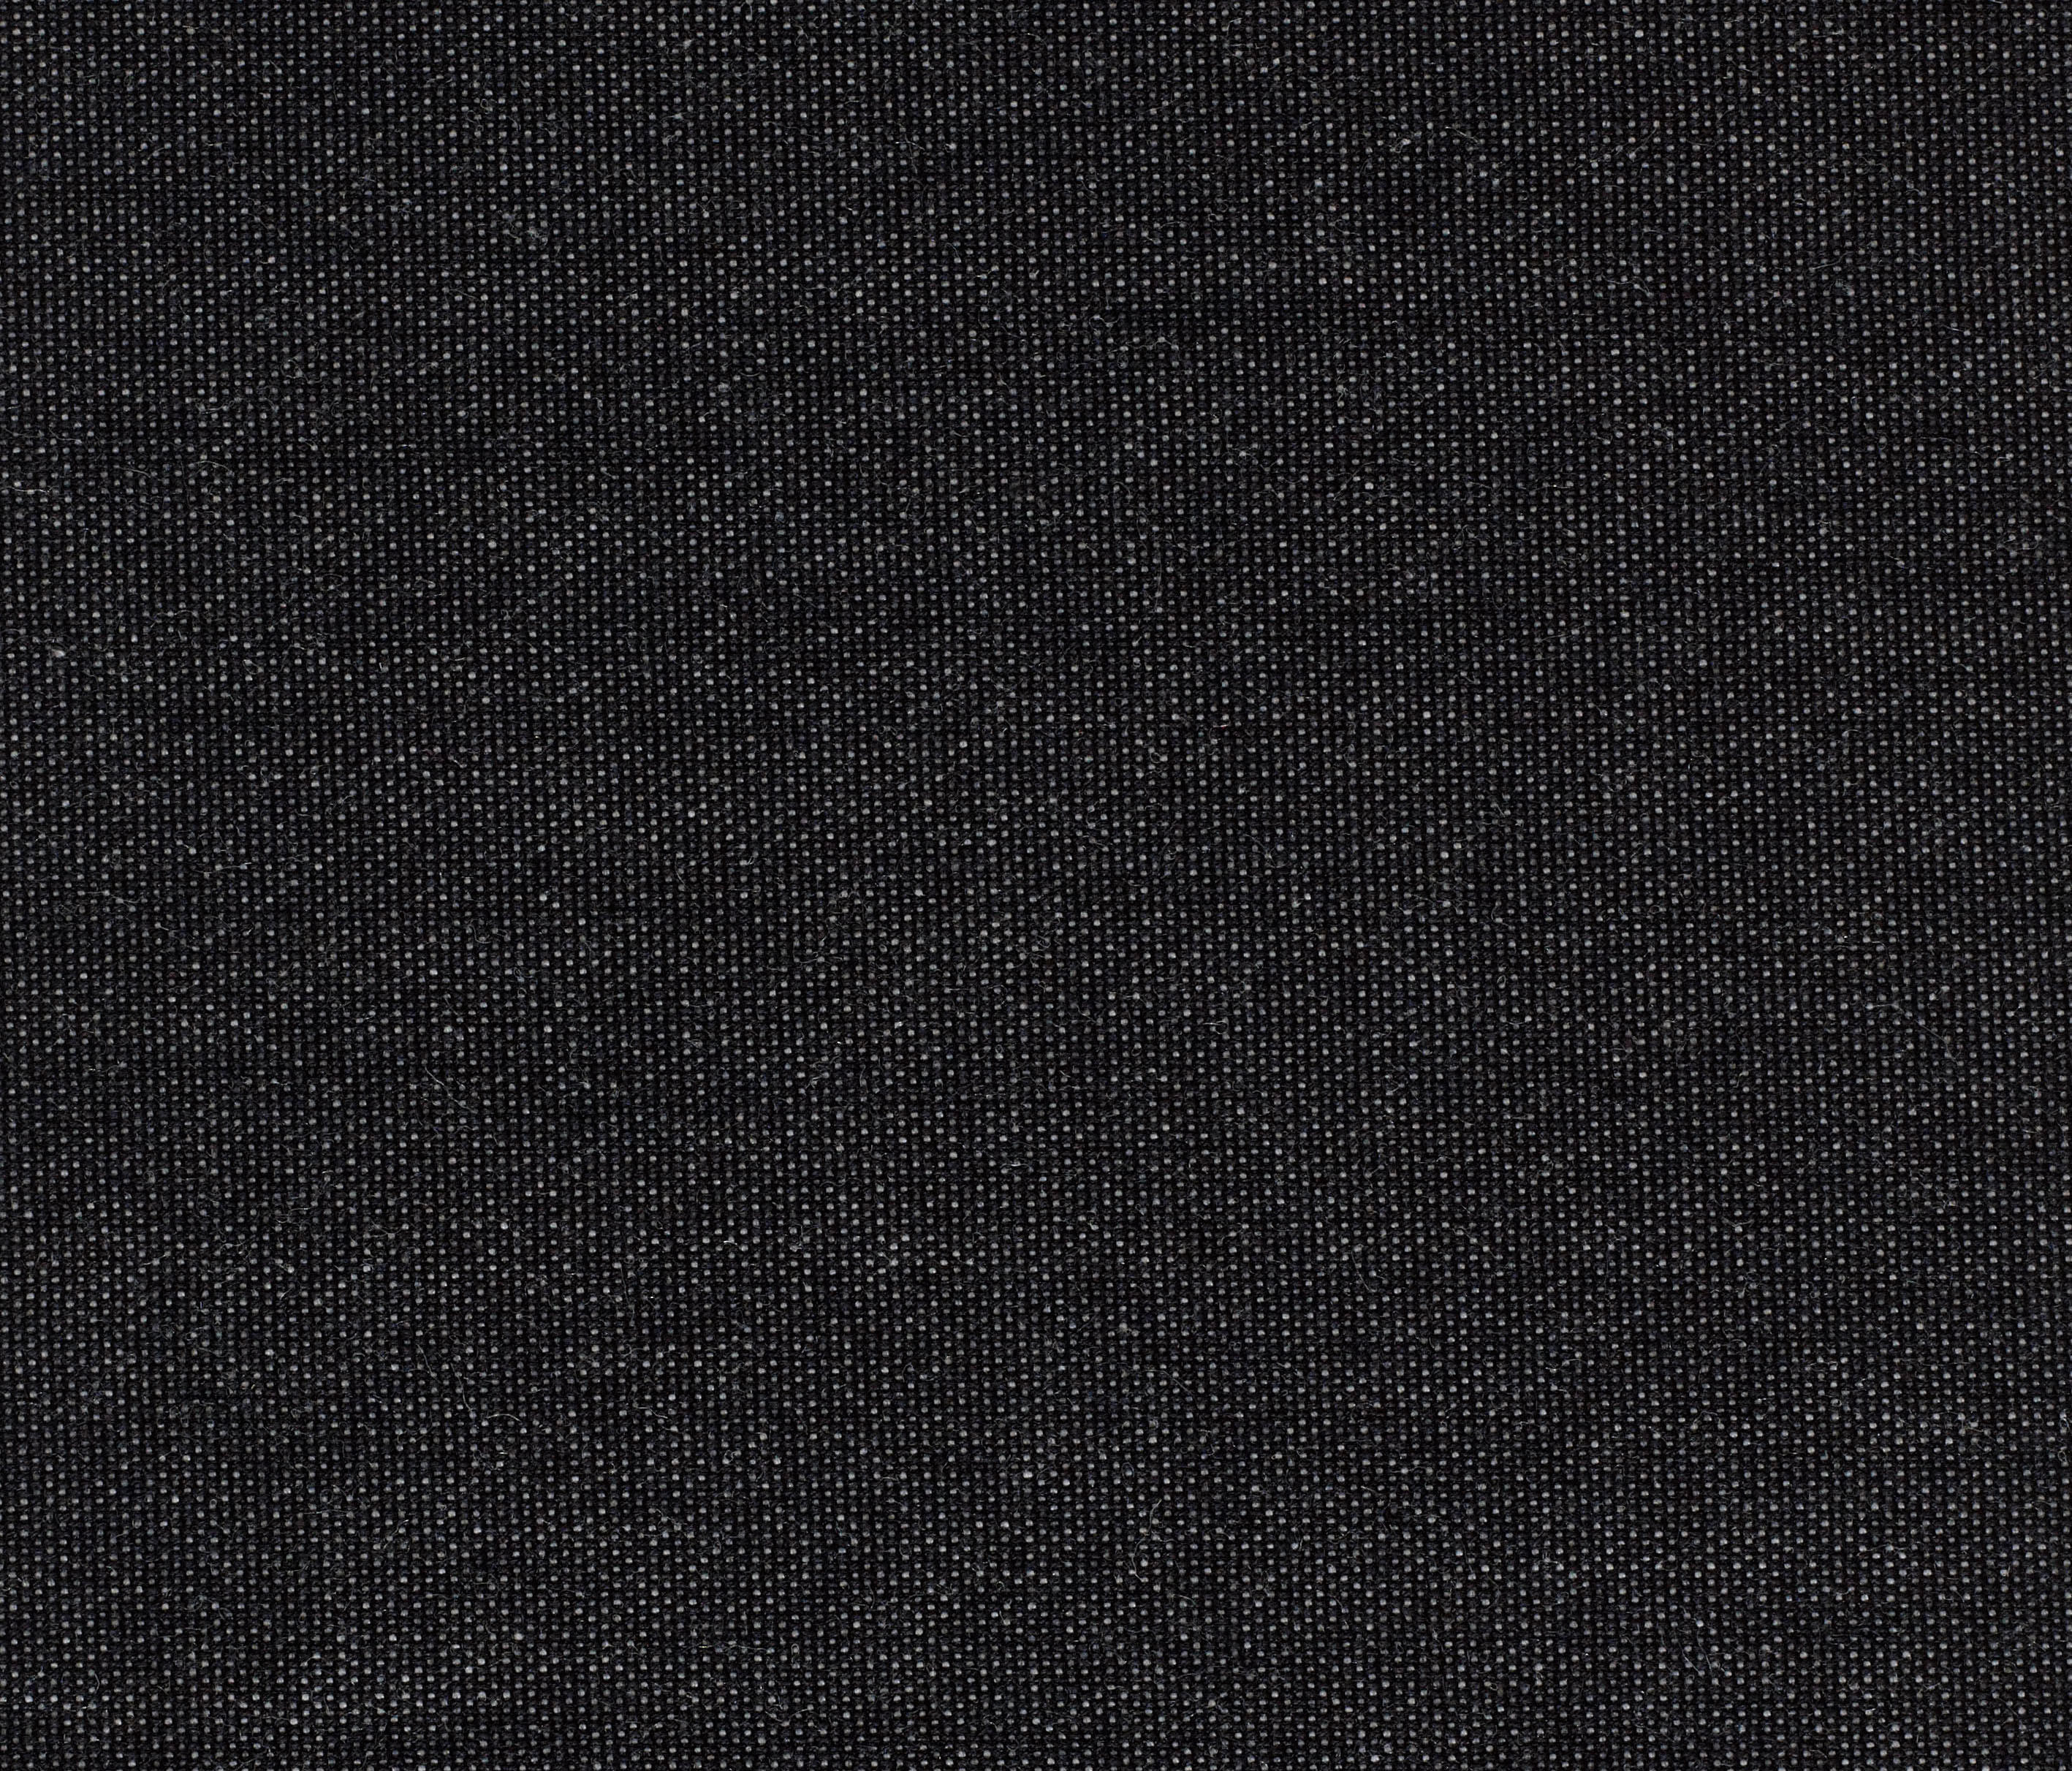 BASEL - 0187 - Upholstery fabrics from Kvadrat | Architonic